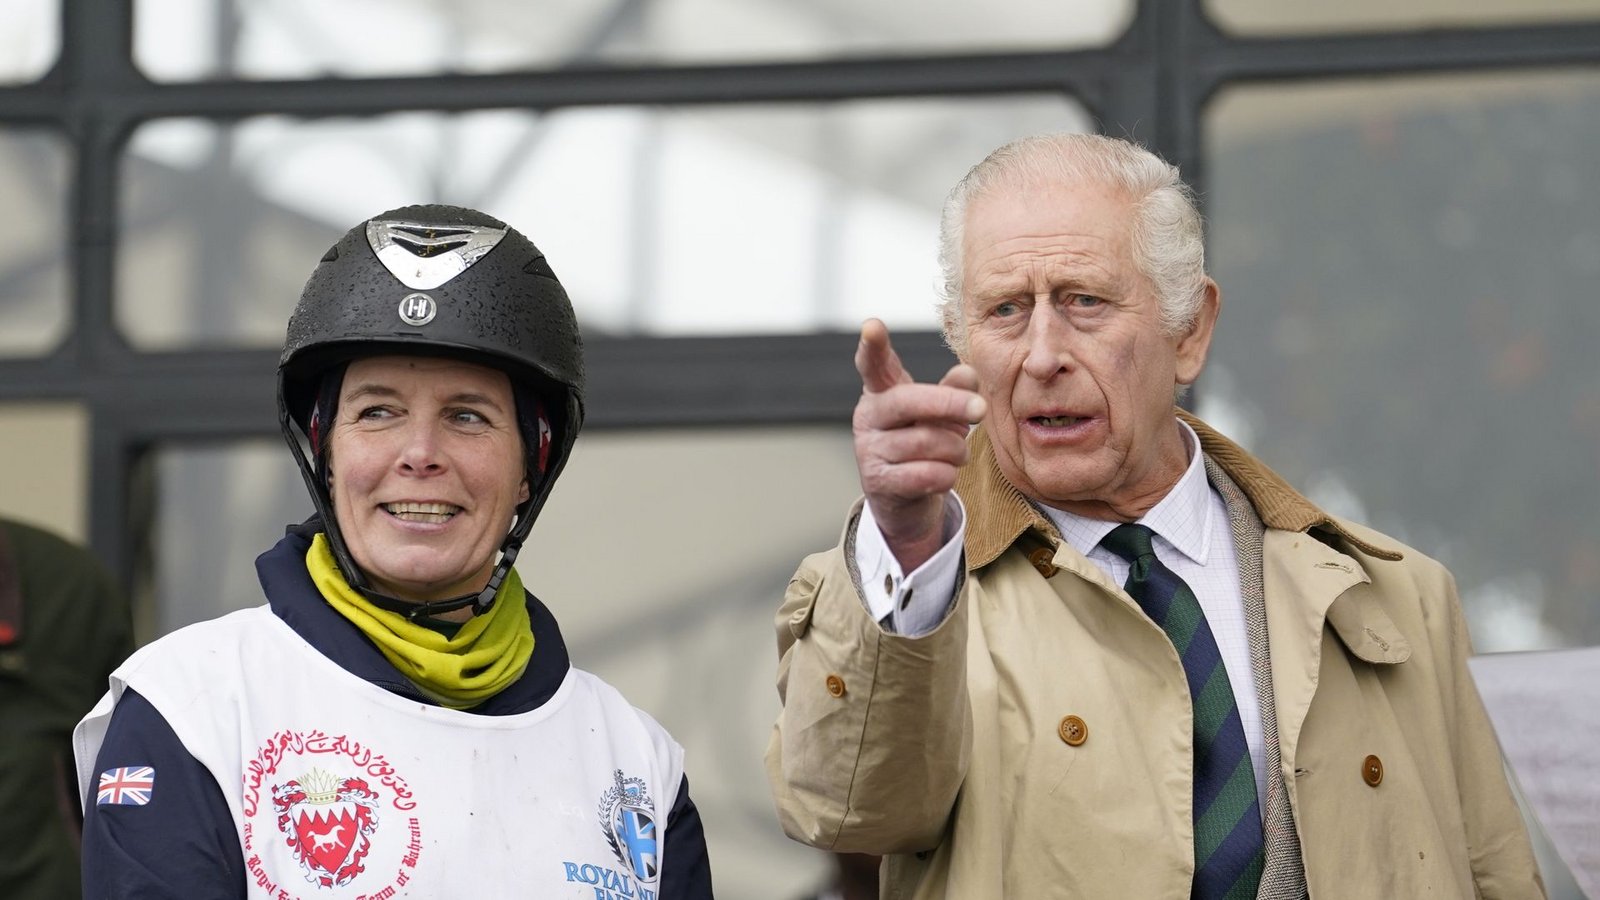 König Charles III. zeigte sich bei der Royal Windsor Horse Show.Foto: Andrew Matthews/PA Wire/dpa